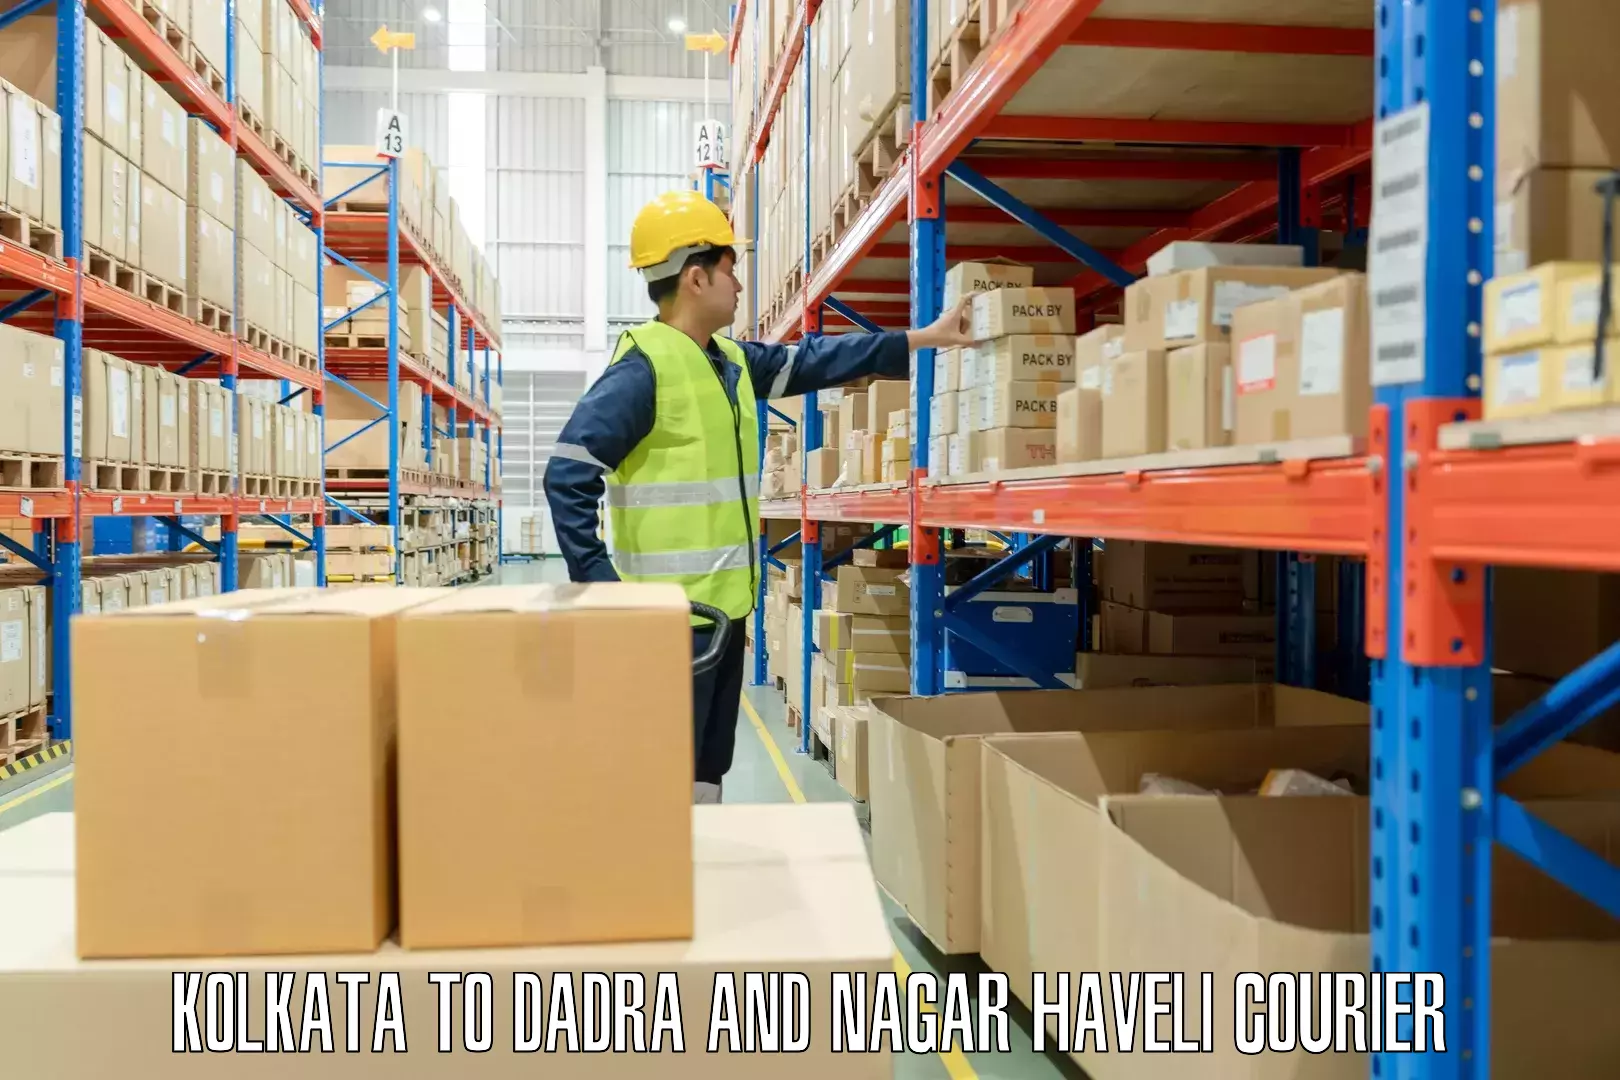 Baggage shipping experts Kolkata to Dadra and Nagar Haveli